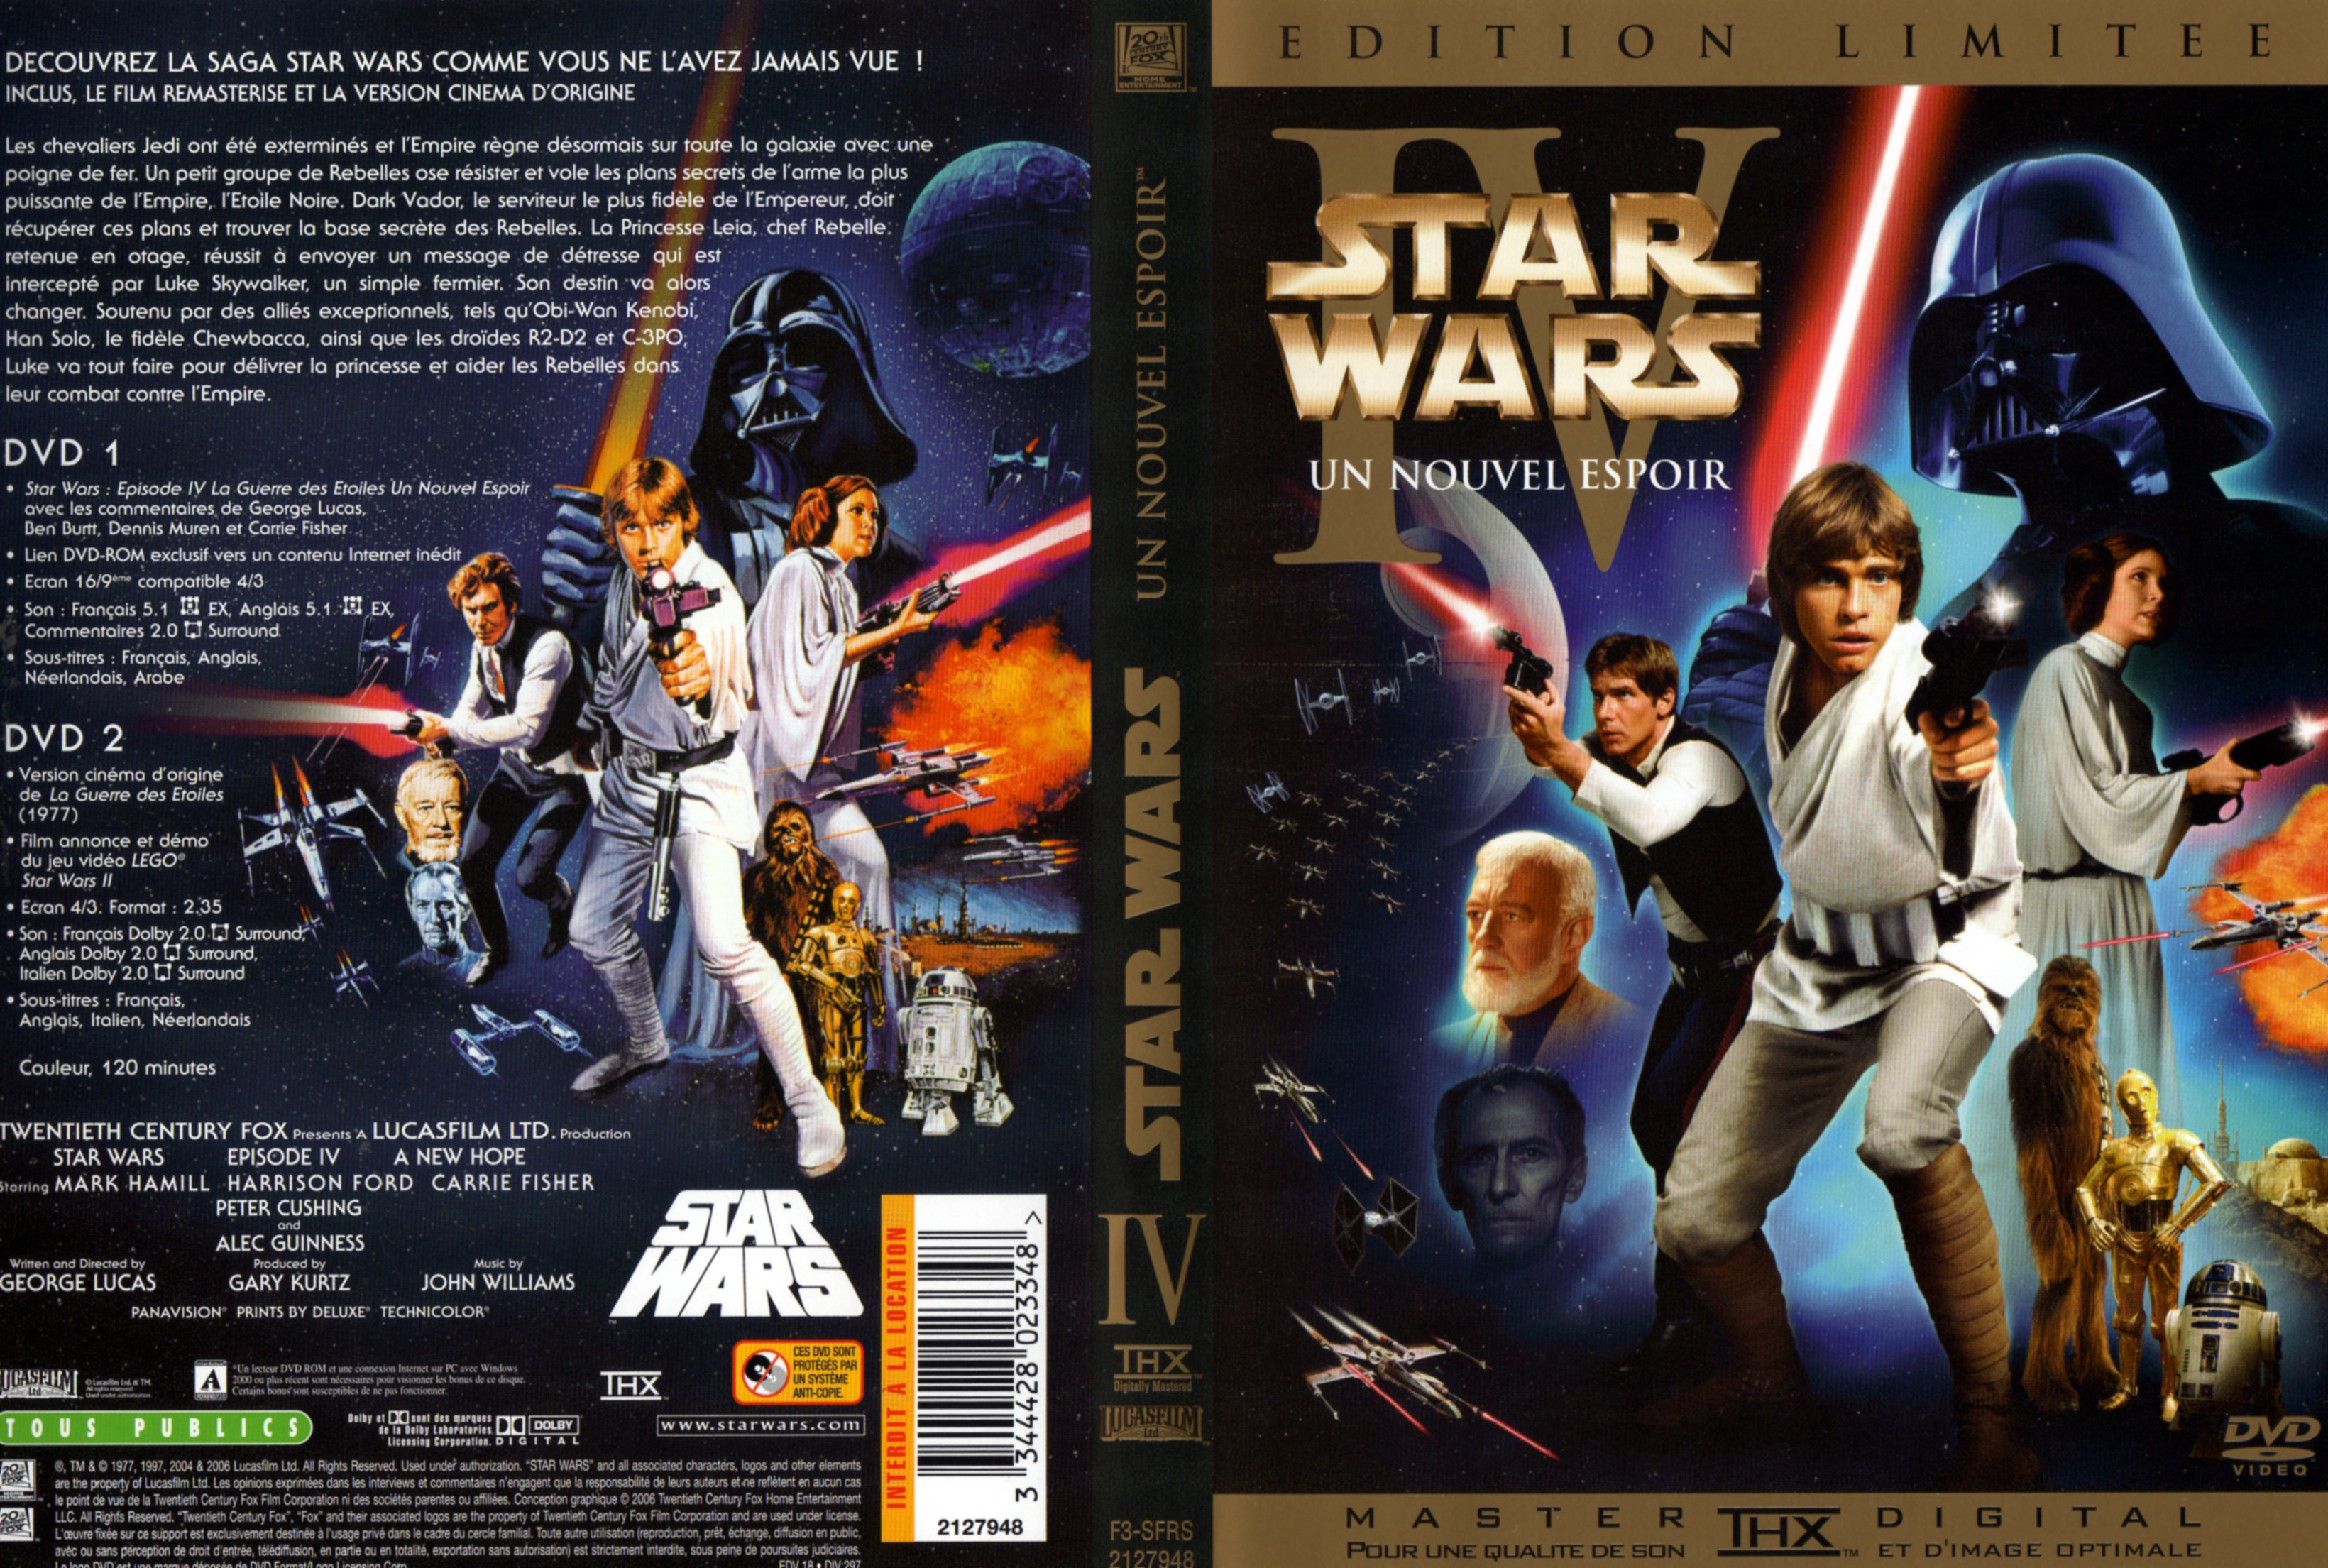 Jaquette DVD Star Wars La guerre des etoiles v2